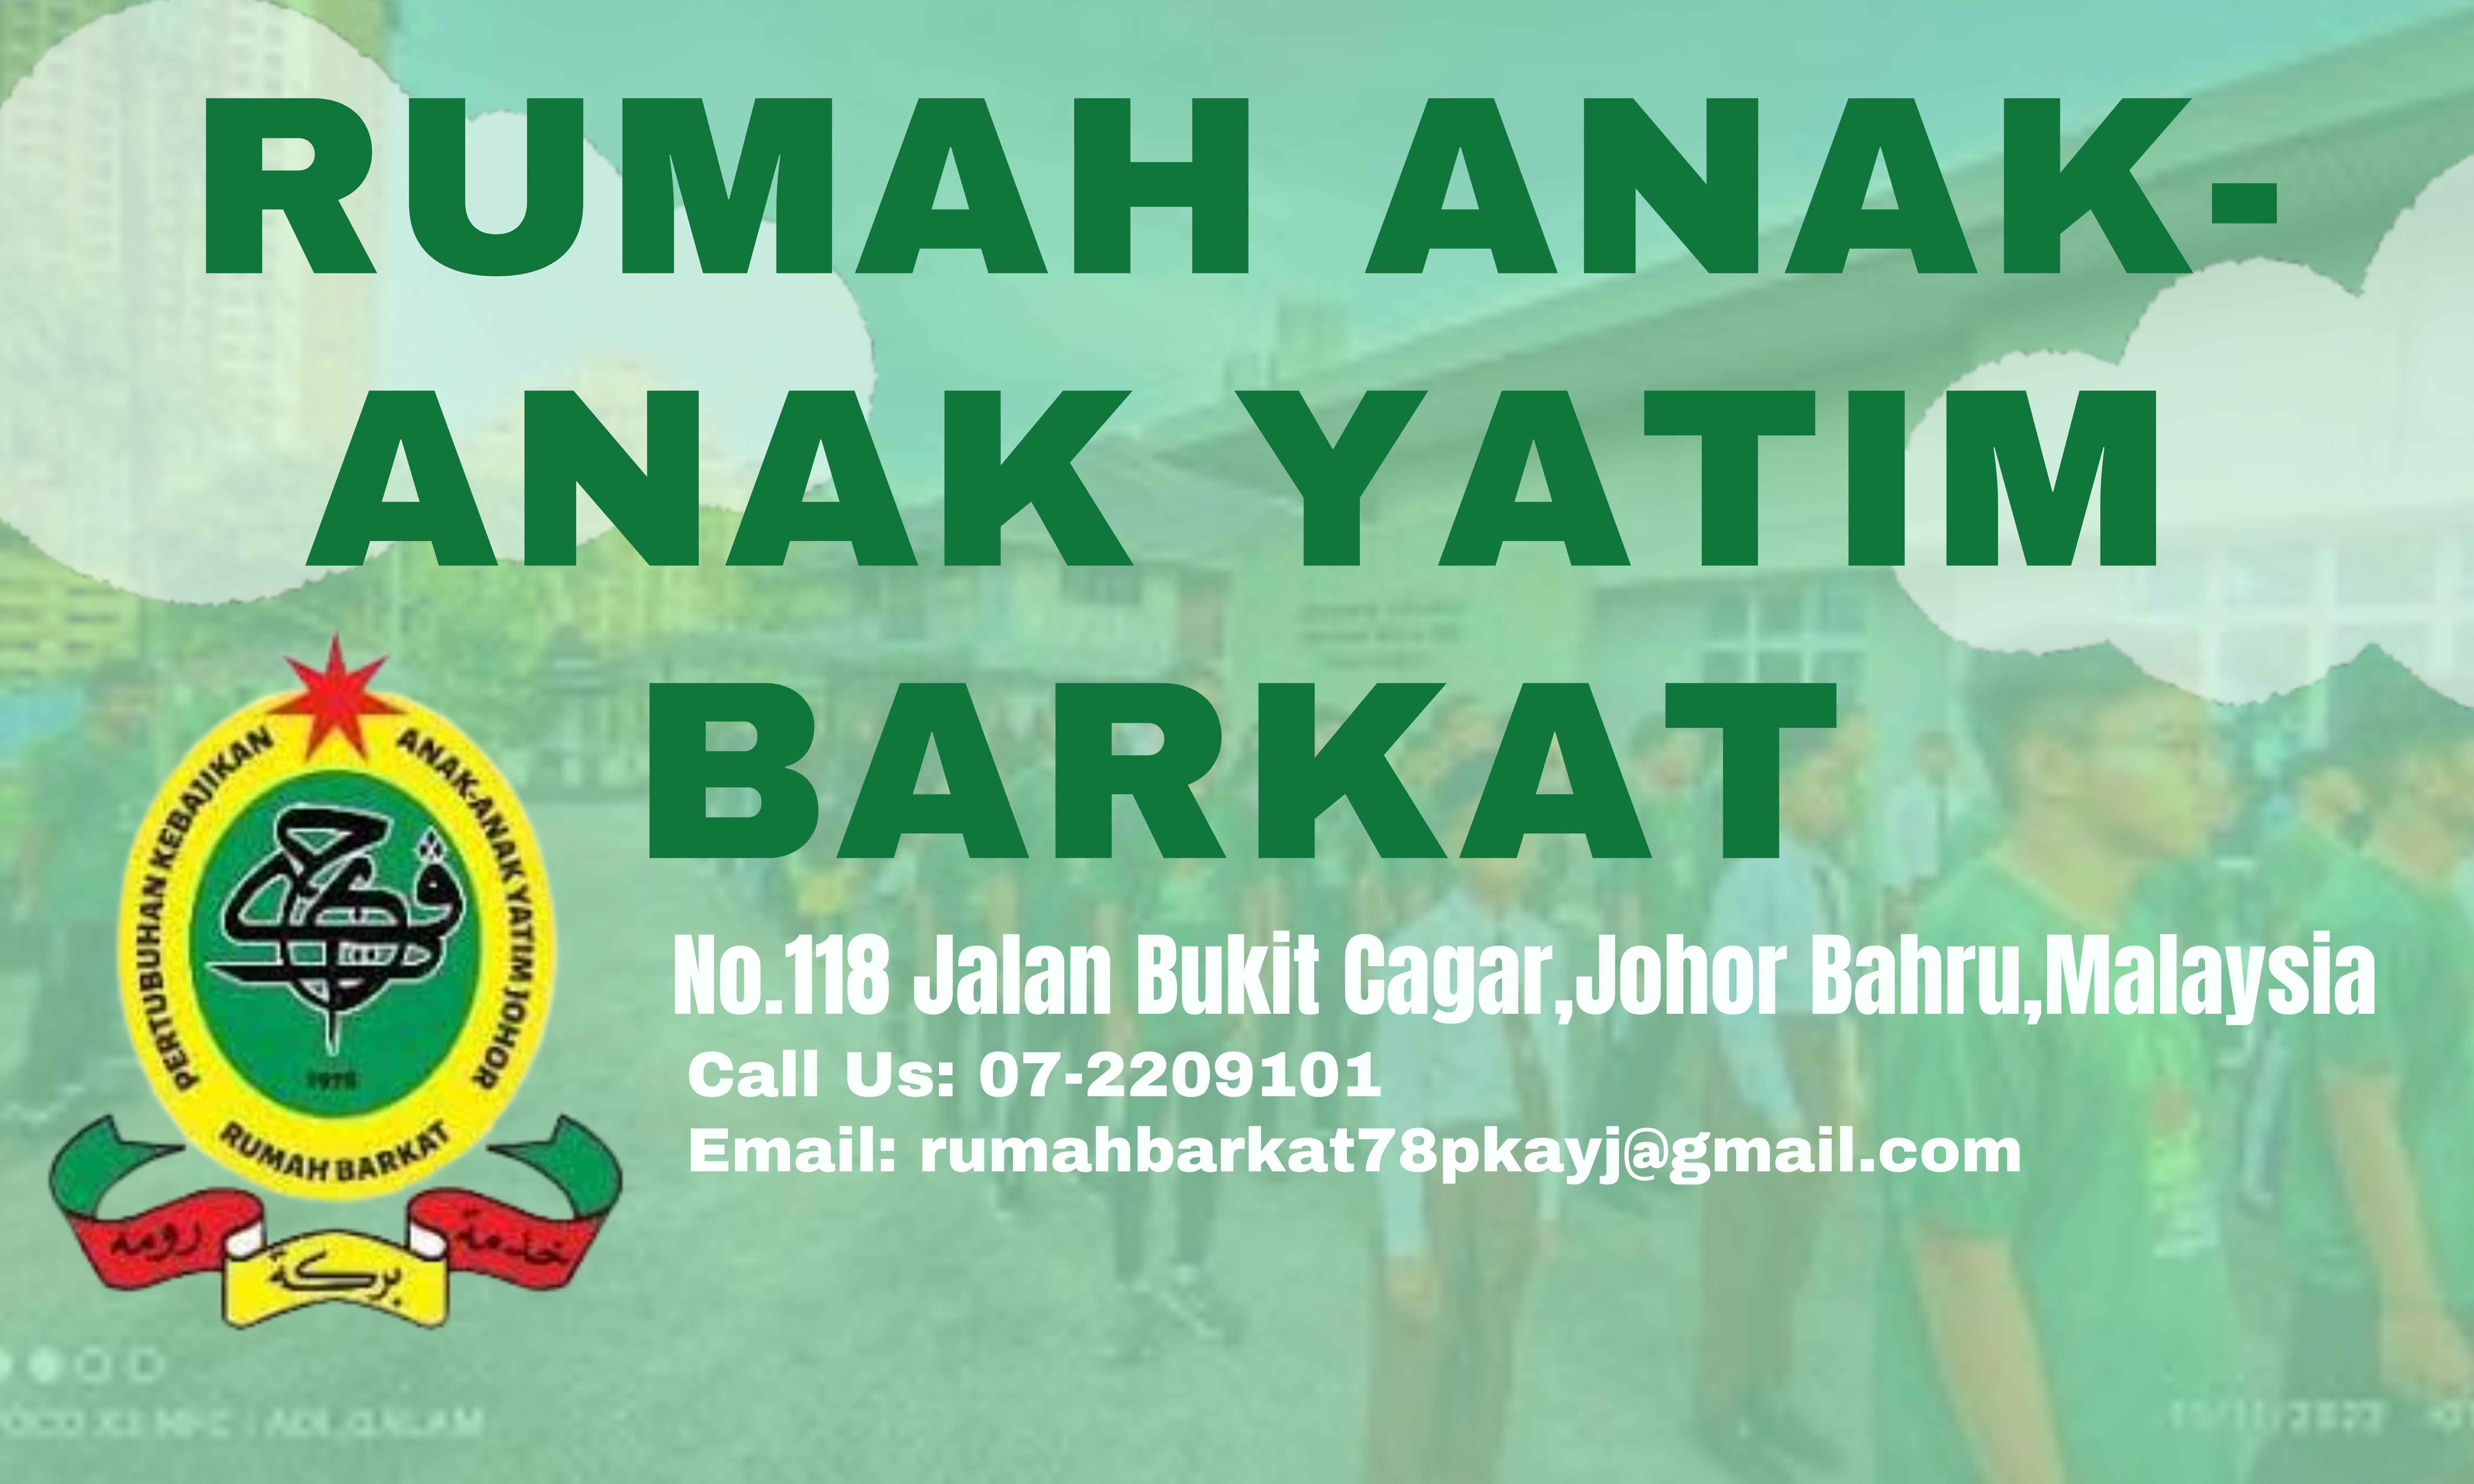 BARKAT Website Banner